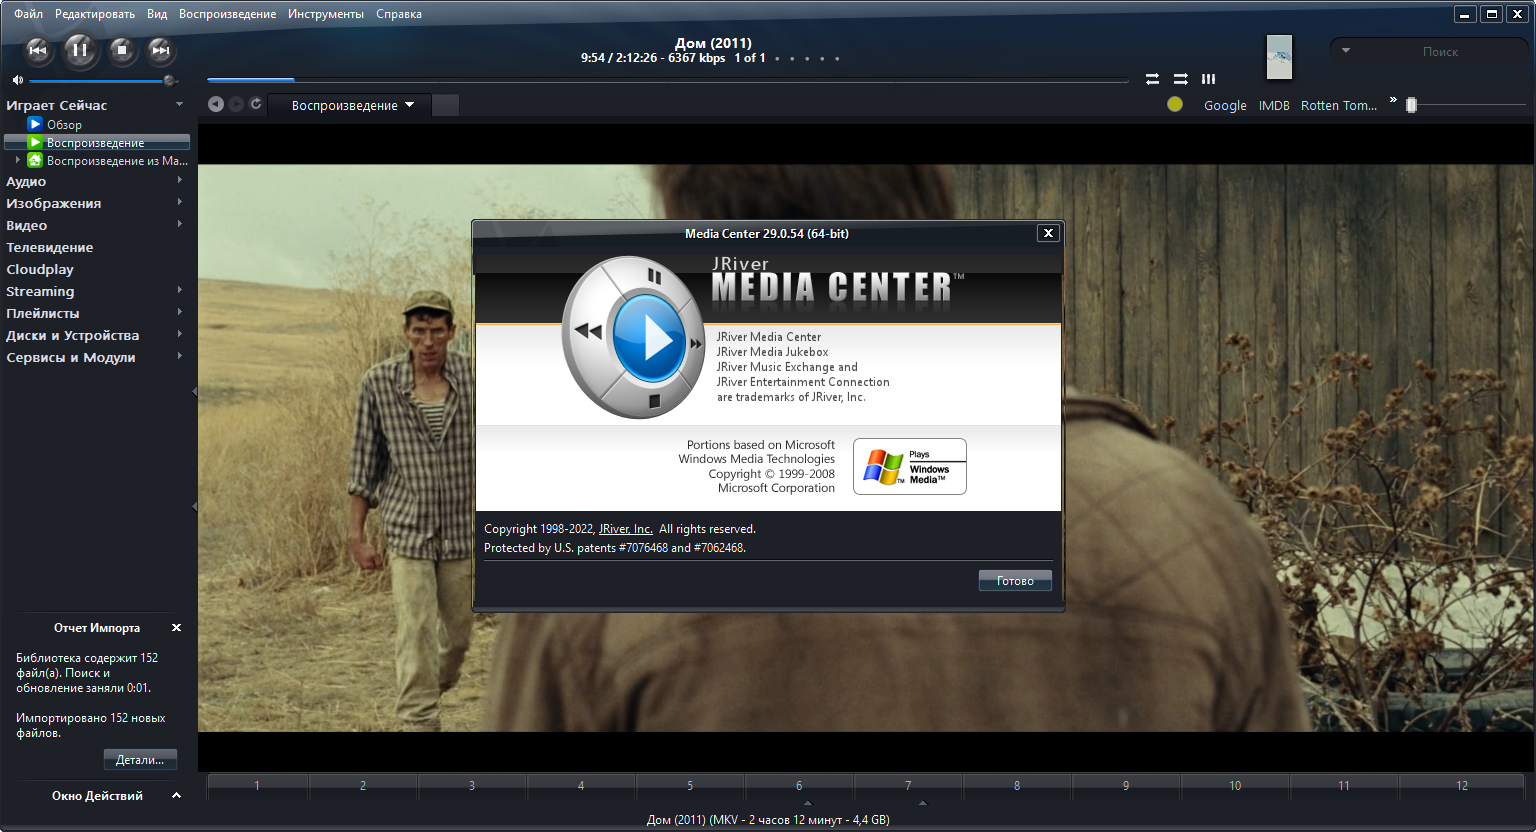 JRiver Media Center 31.0.23 instal the new for apple